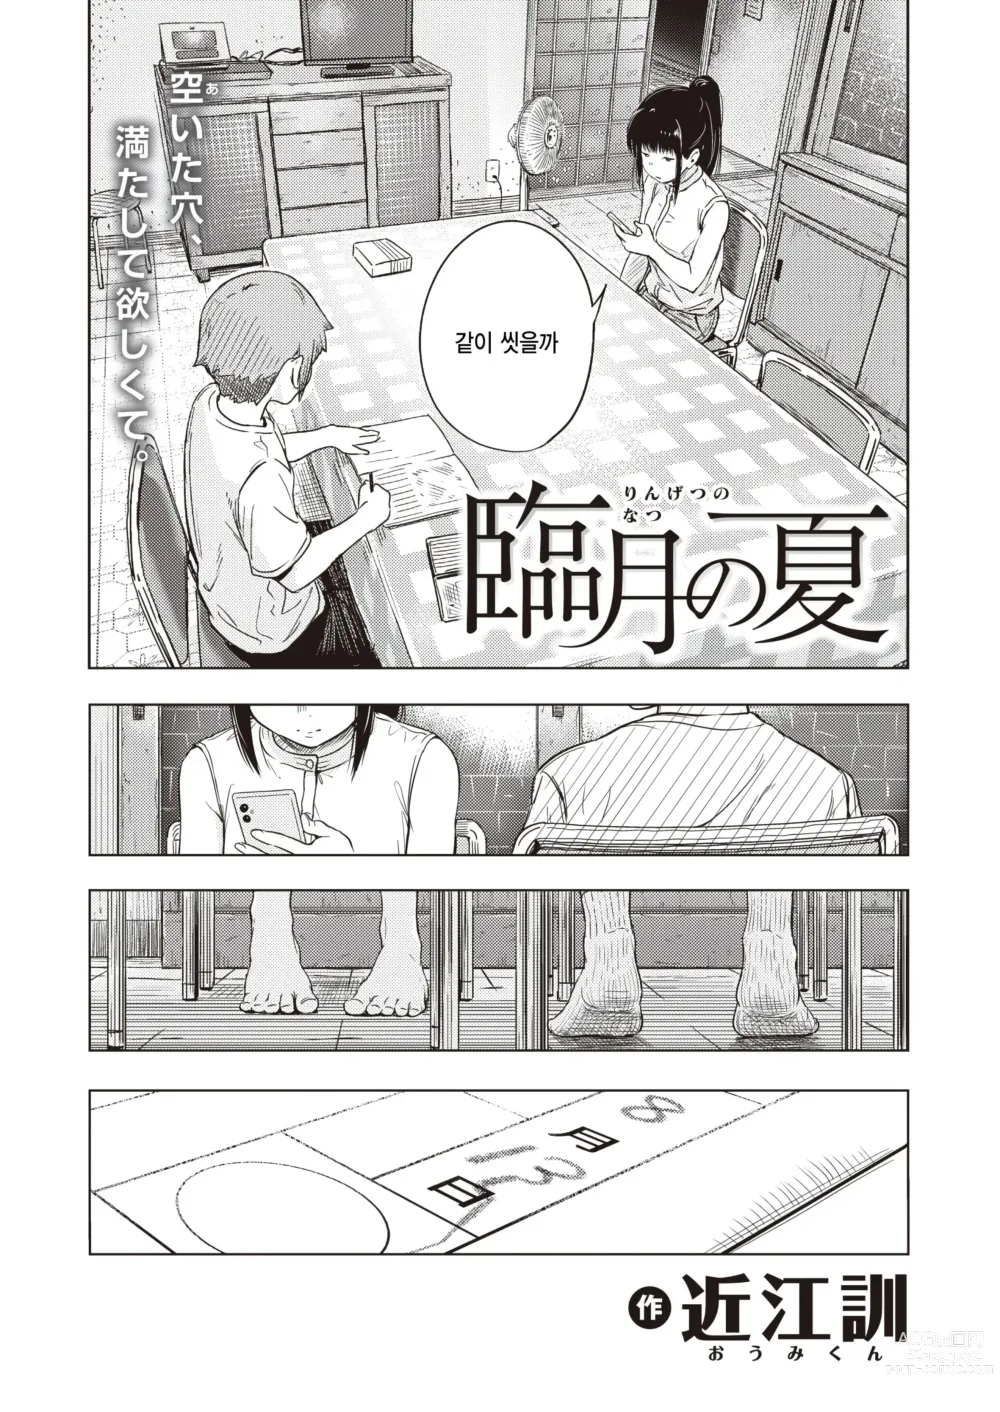 Page 4 of manga Ringetsu no Natsu